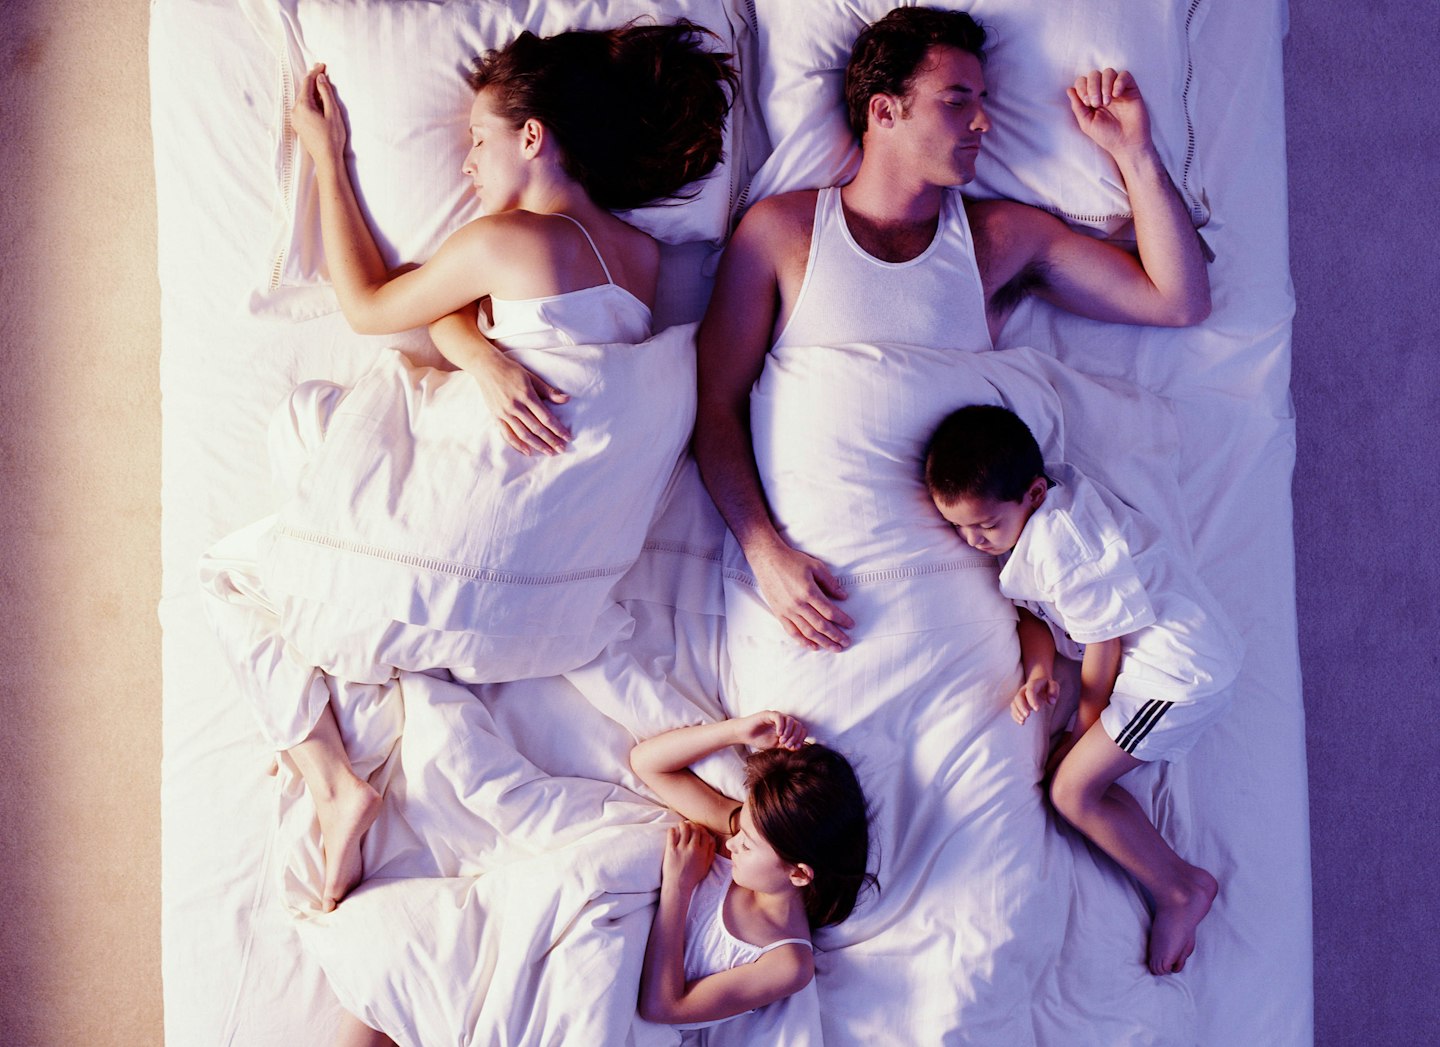 Co-sleeping babies, children